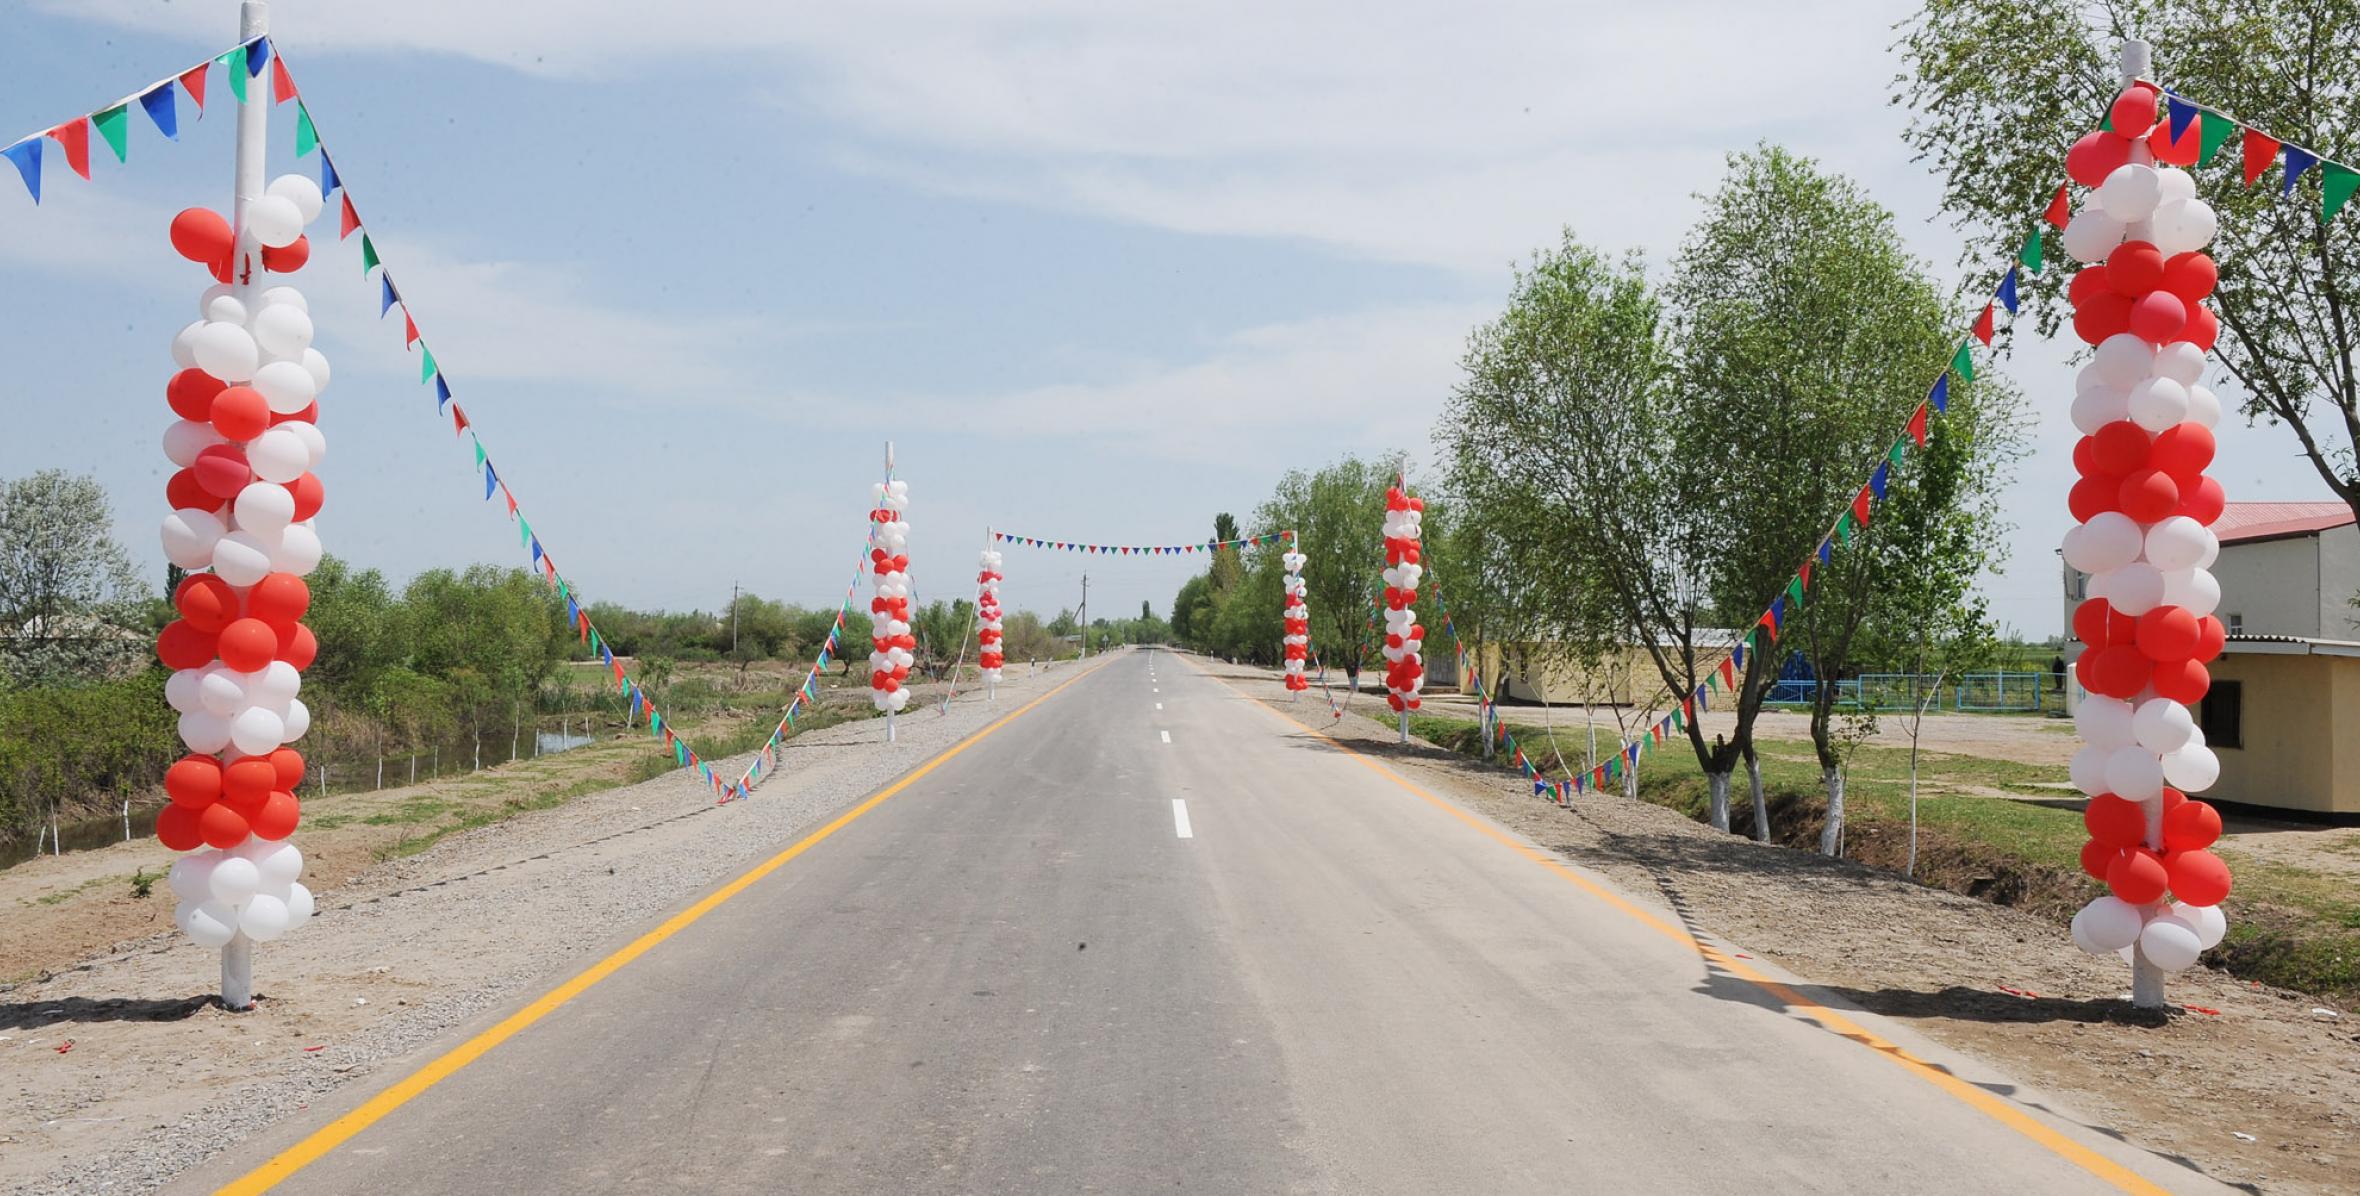 İlham Əliyev İmişli-Qaravəlili-Mirili avtomobil yolunun yenidənqurmadan sonra açılışında iştirak etmişdir